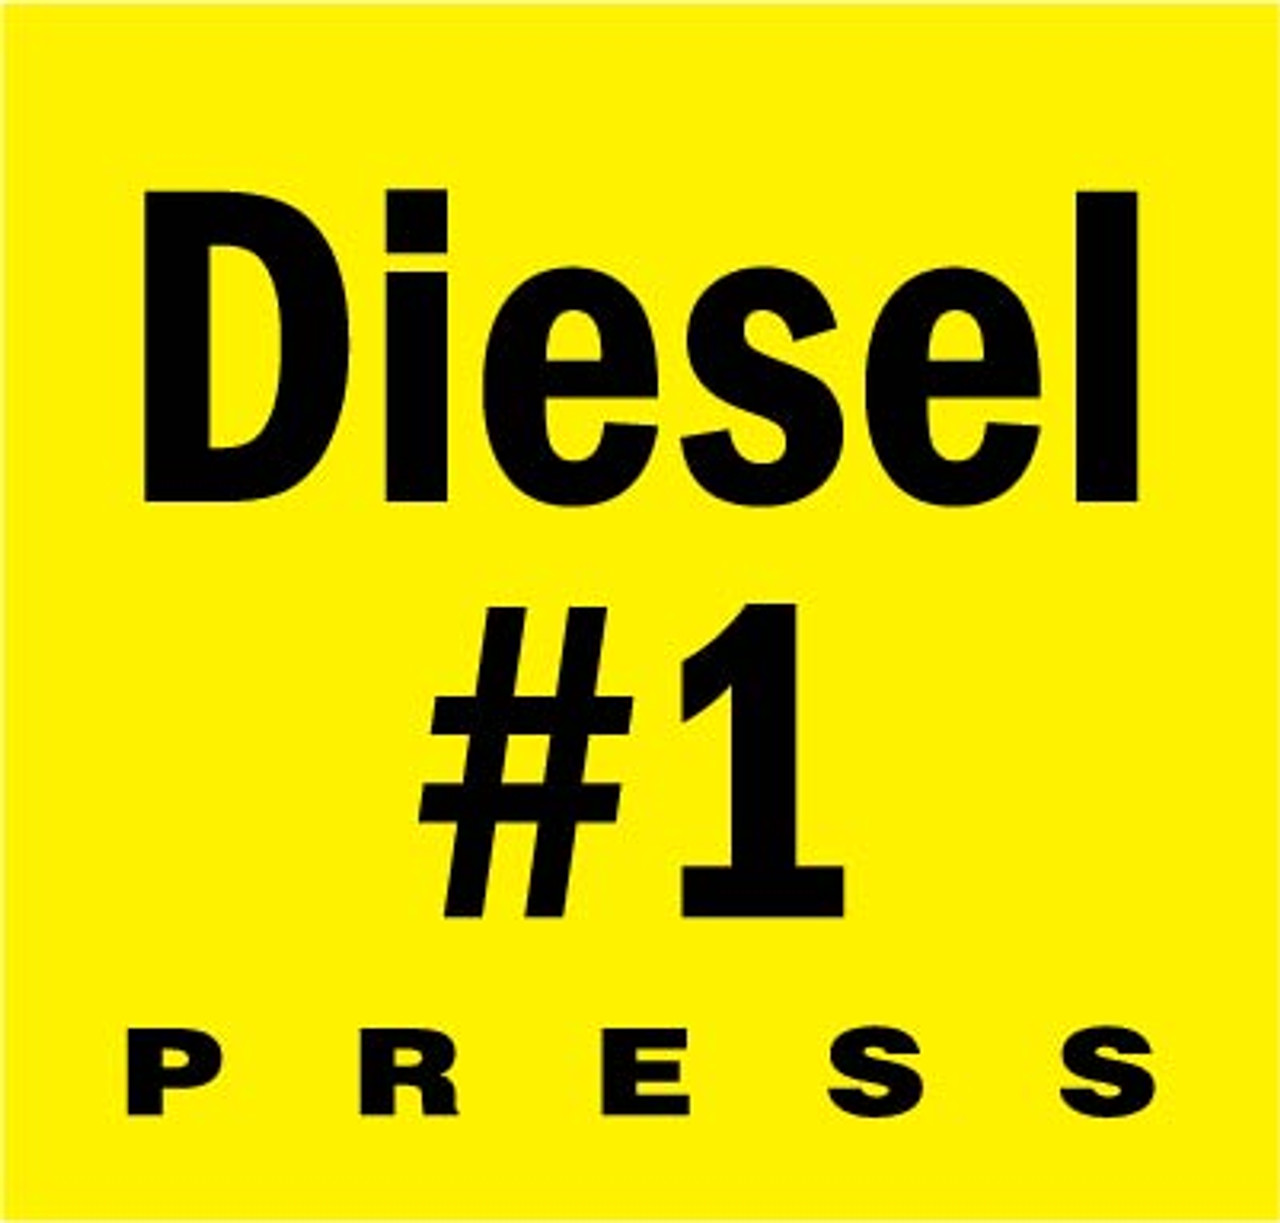 EU02001G027A - Octane Rating Button Overlay Diesel #1